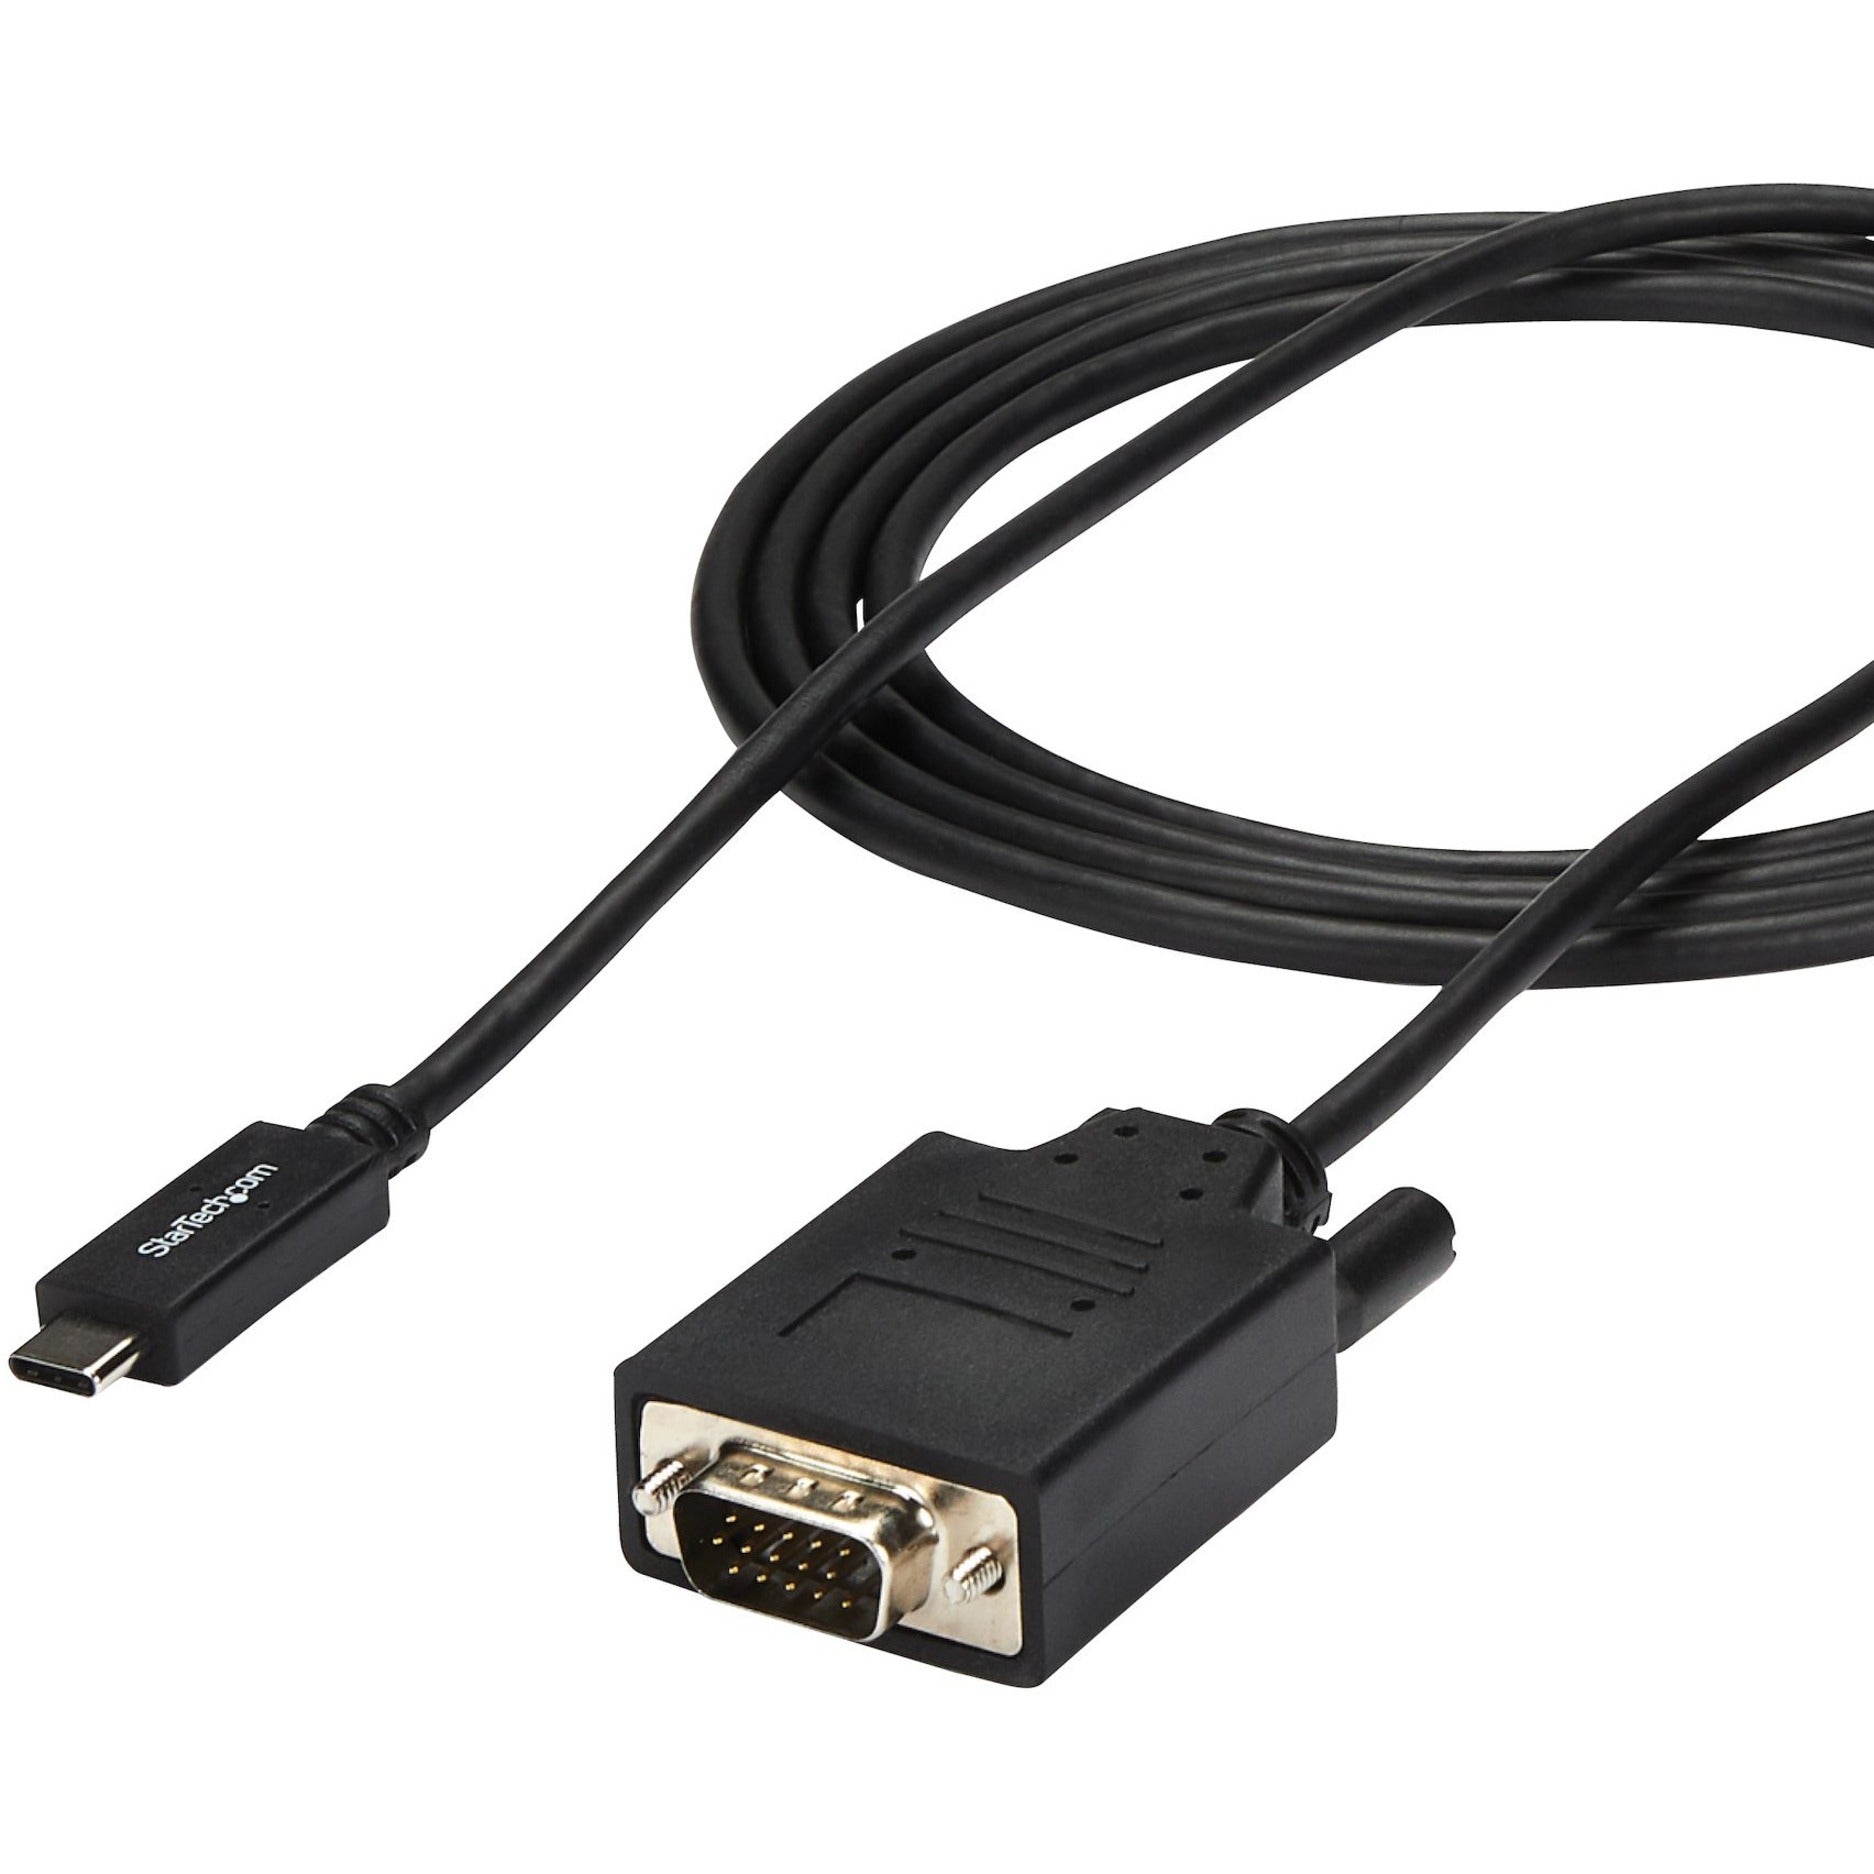 StarTech.com CDP2VGAMM2MB USB C to VGA Cable - USB Type C to VGA - 1920 x 1200, Black, 6 ft